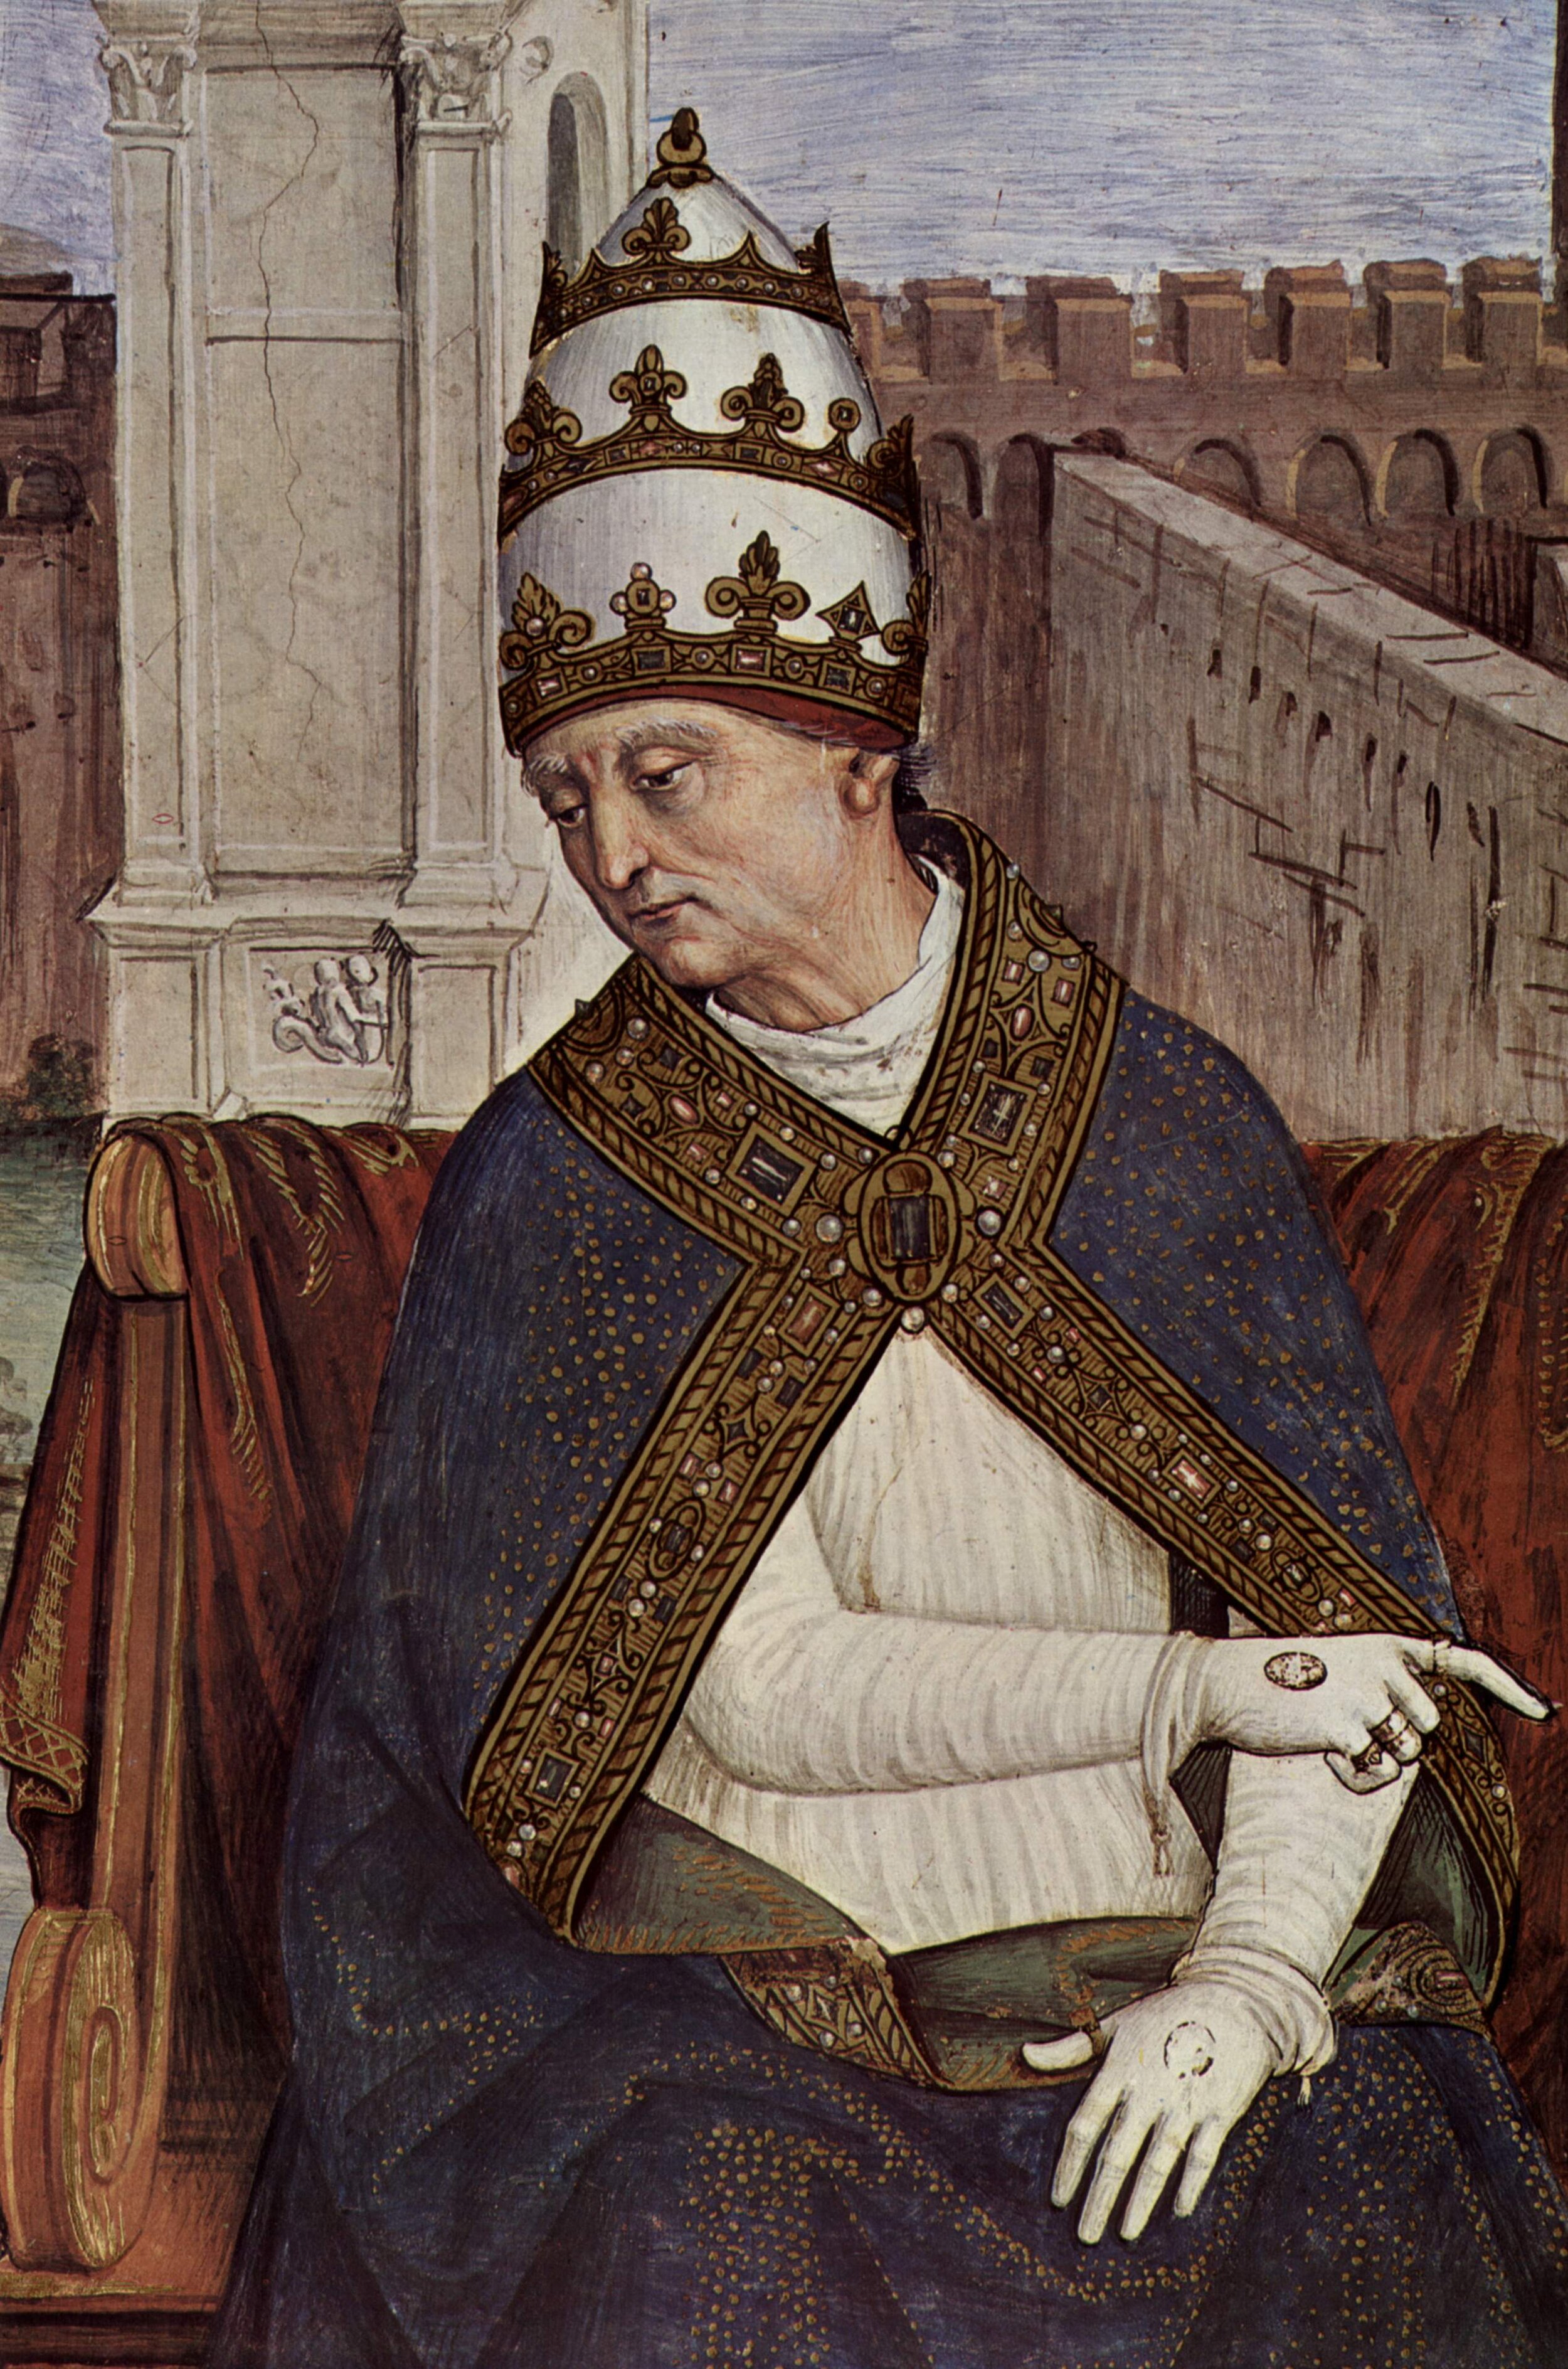 Enea Silvio Piccolomini, later Pope Pius II